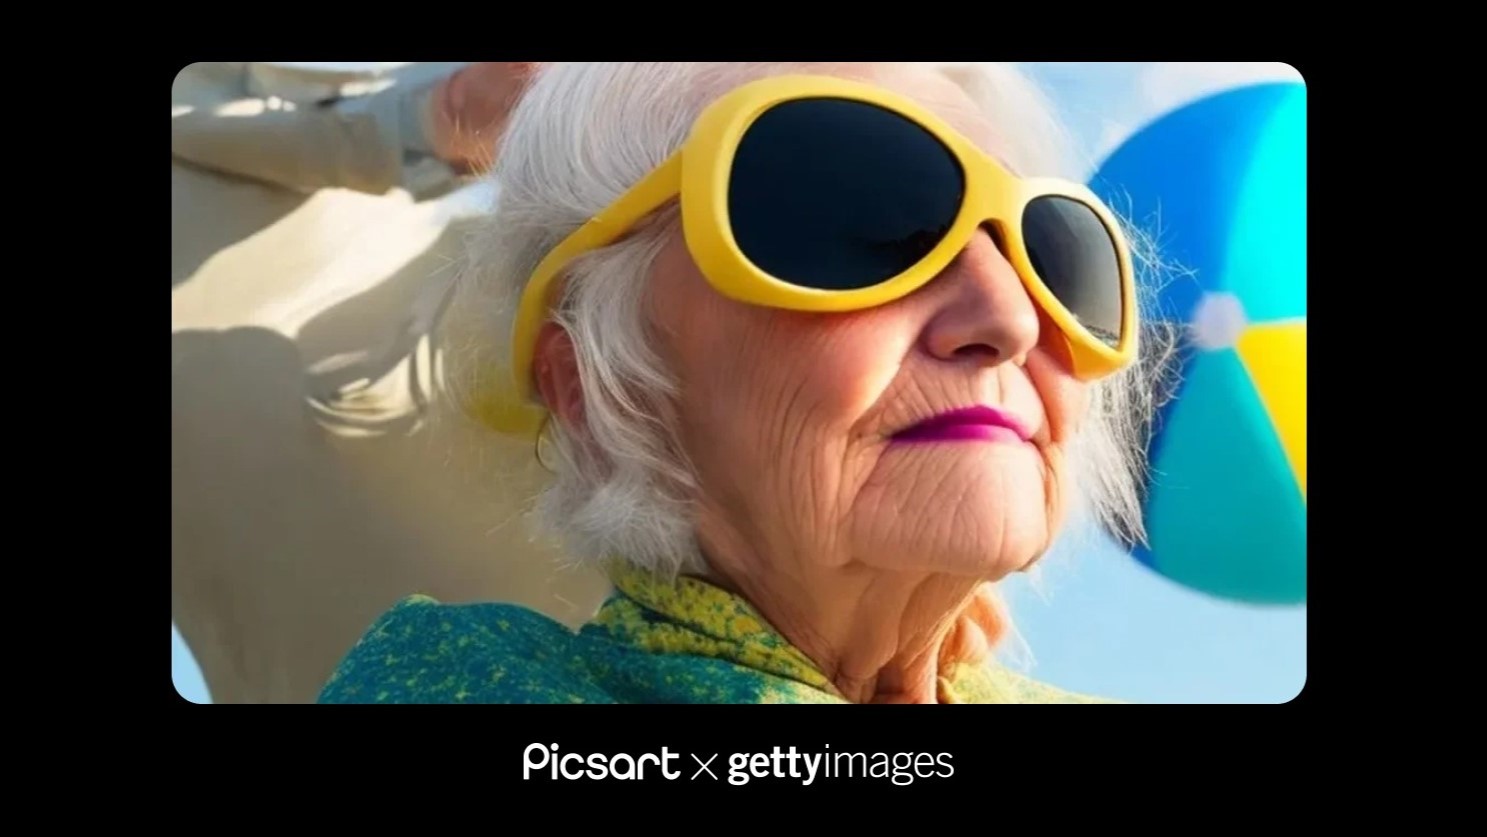 Picsart se asocia con Getty Images para ofrecer arte con IA para uso comercial